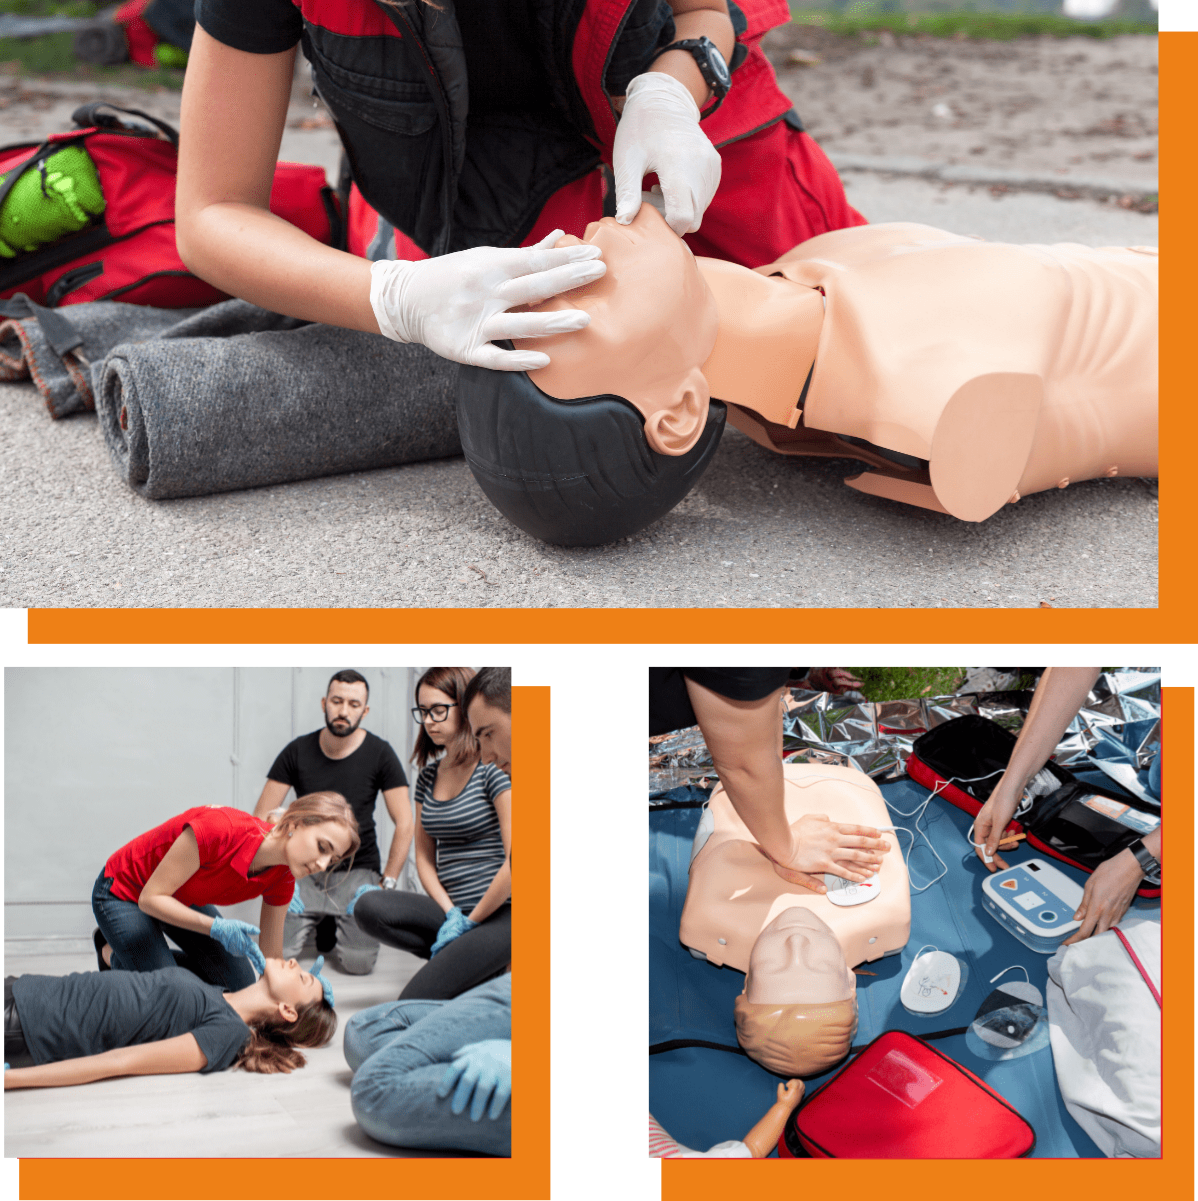 3 Photos Secouriste international fournissant les premiers secours à une personne inconsciente